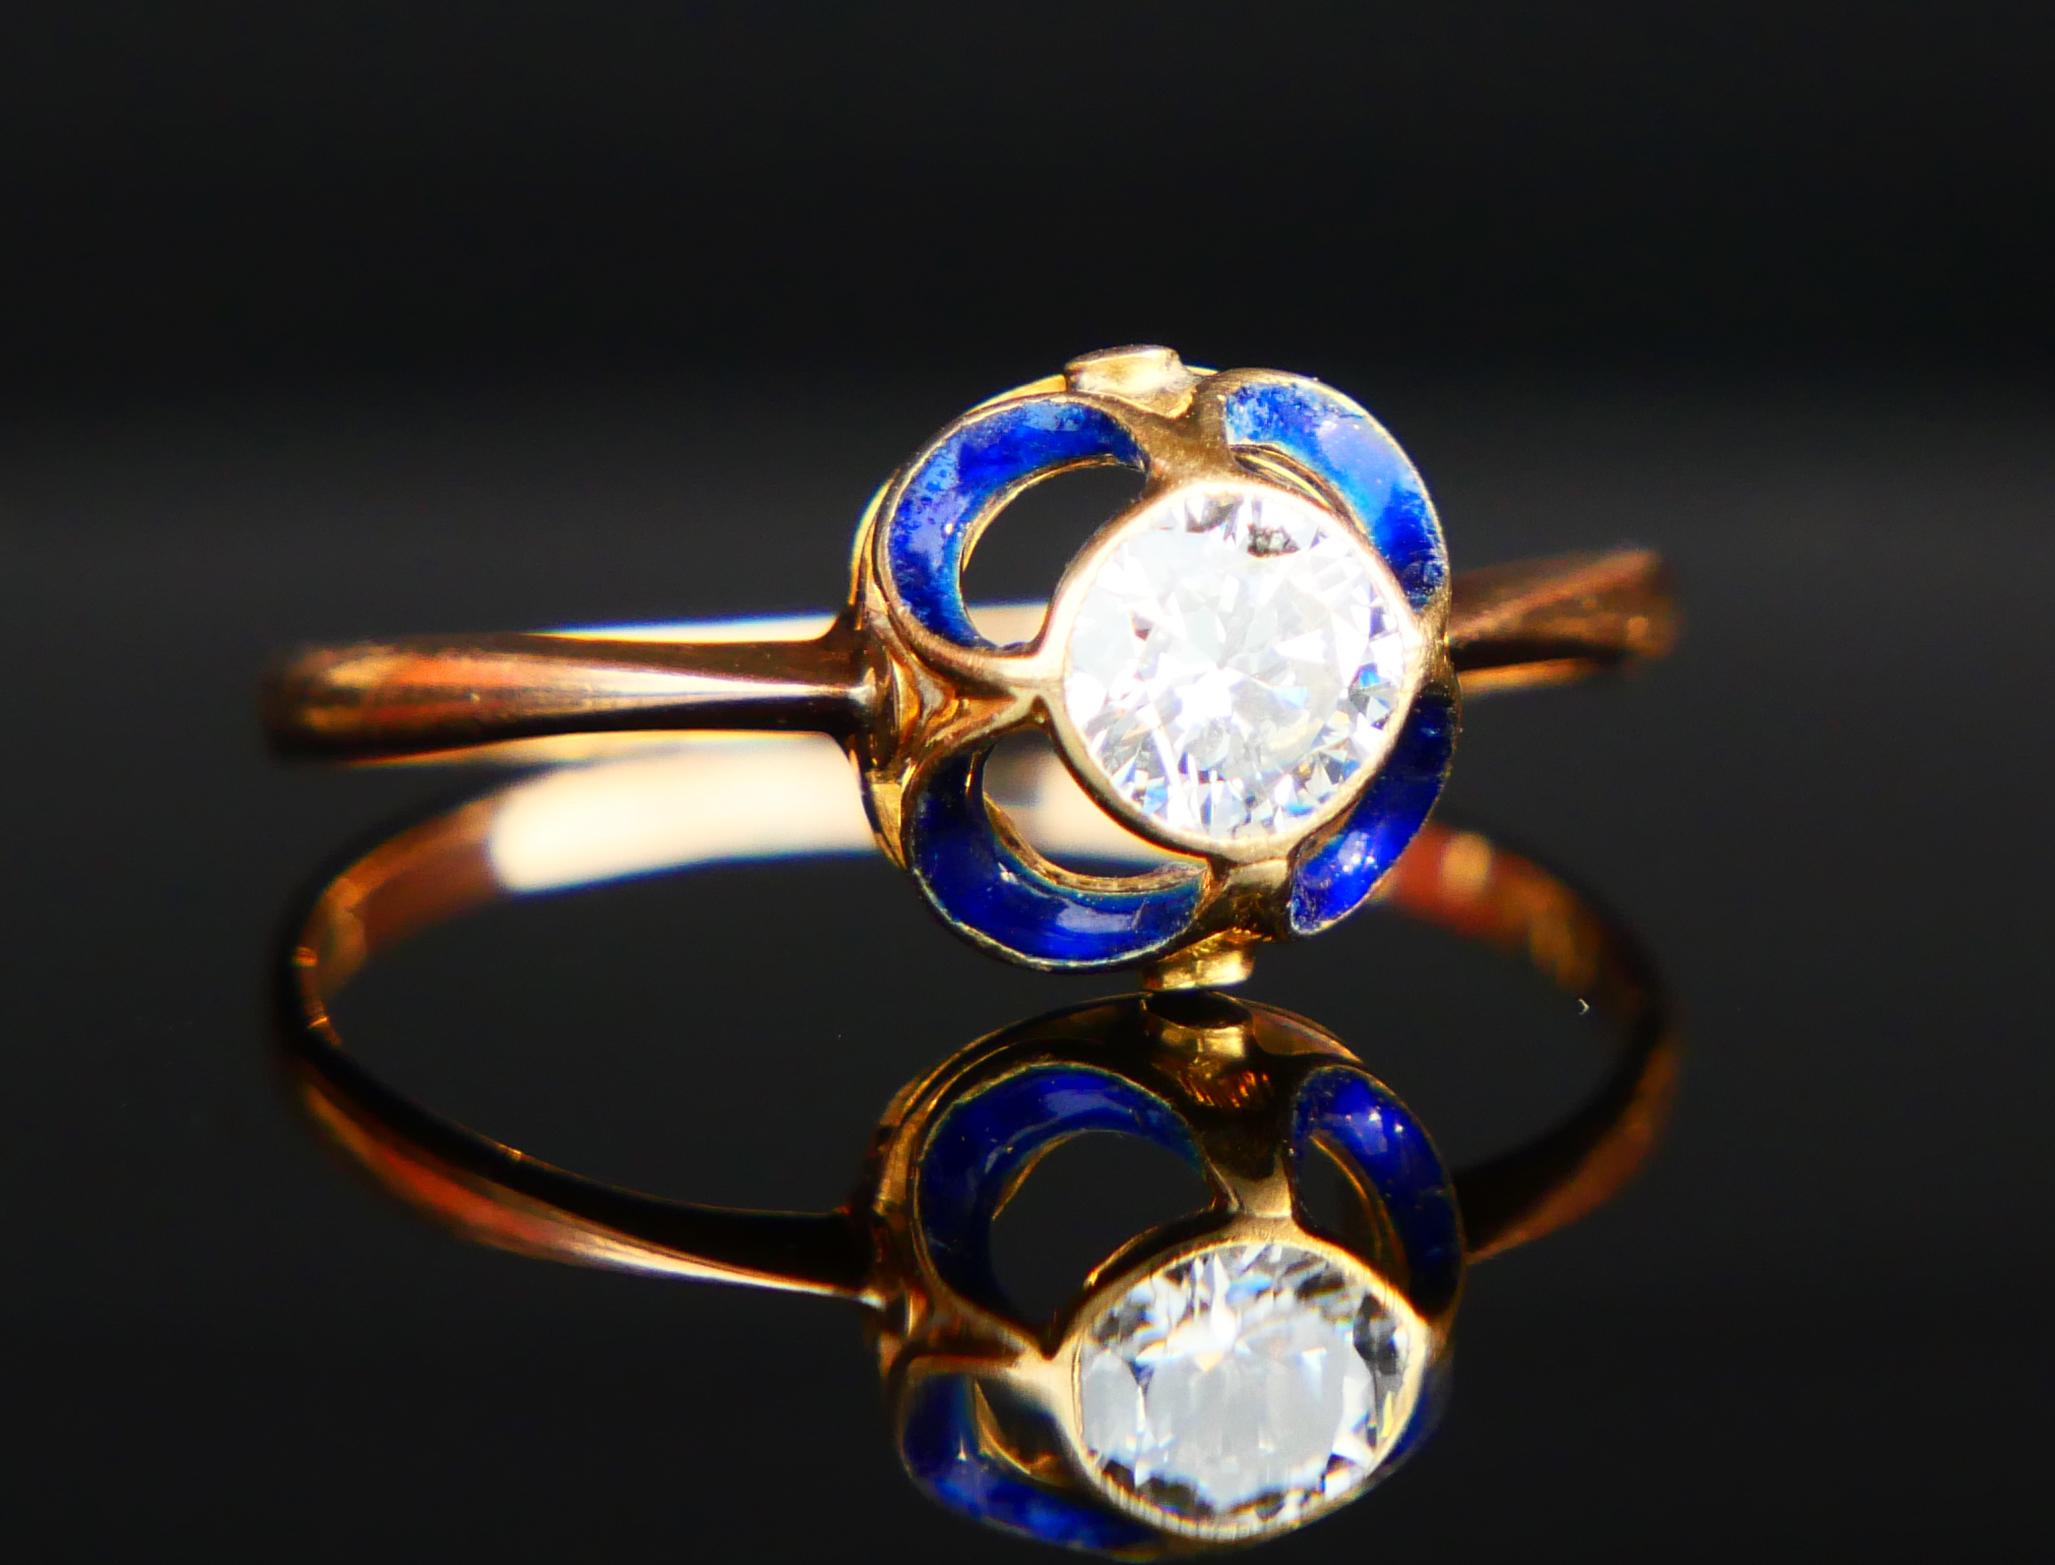 1904 Nordic Art Nouveau Ring 05ct. Diamond Blue Enamel 18K Gold ØUS9.5/2.5gr 6